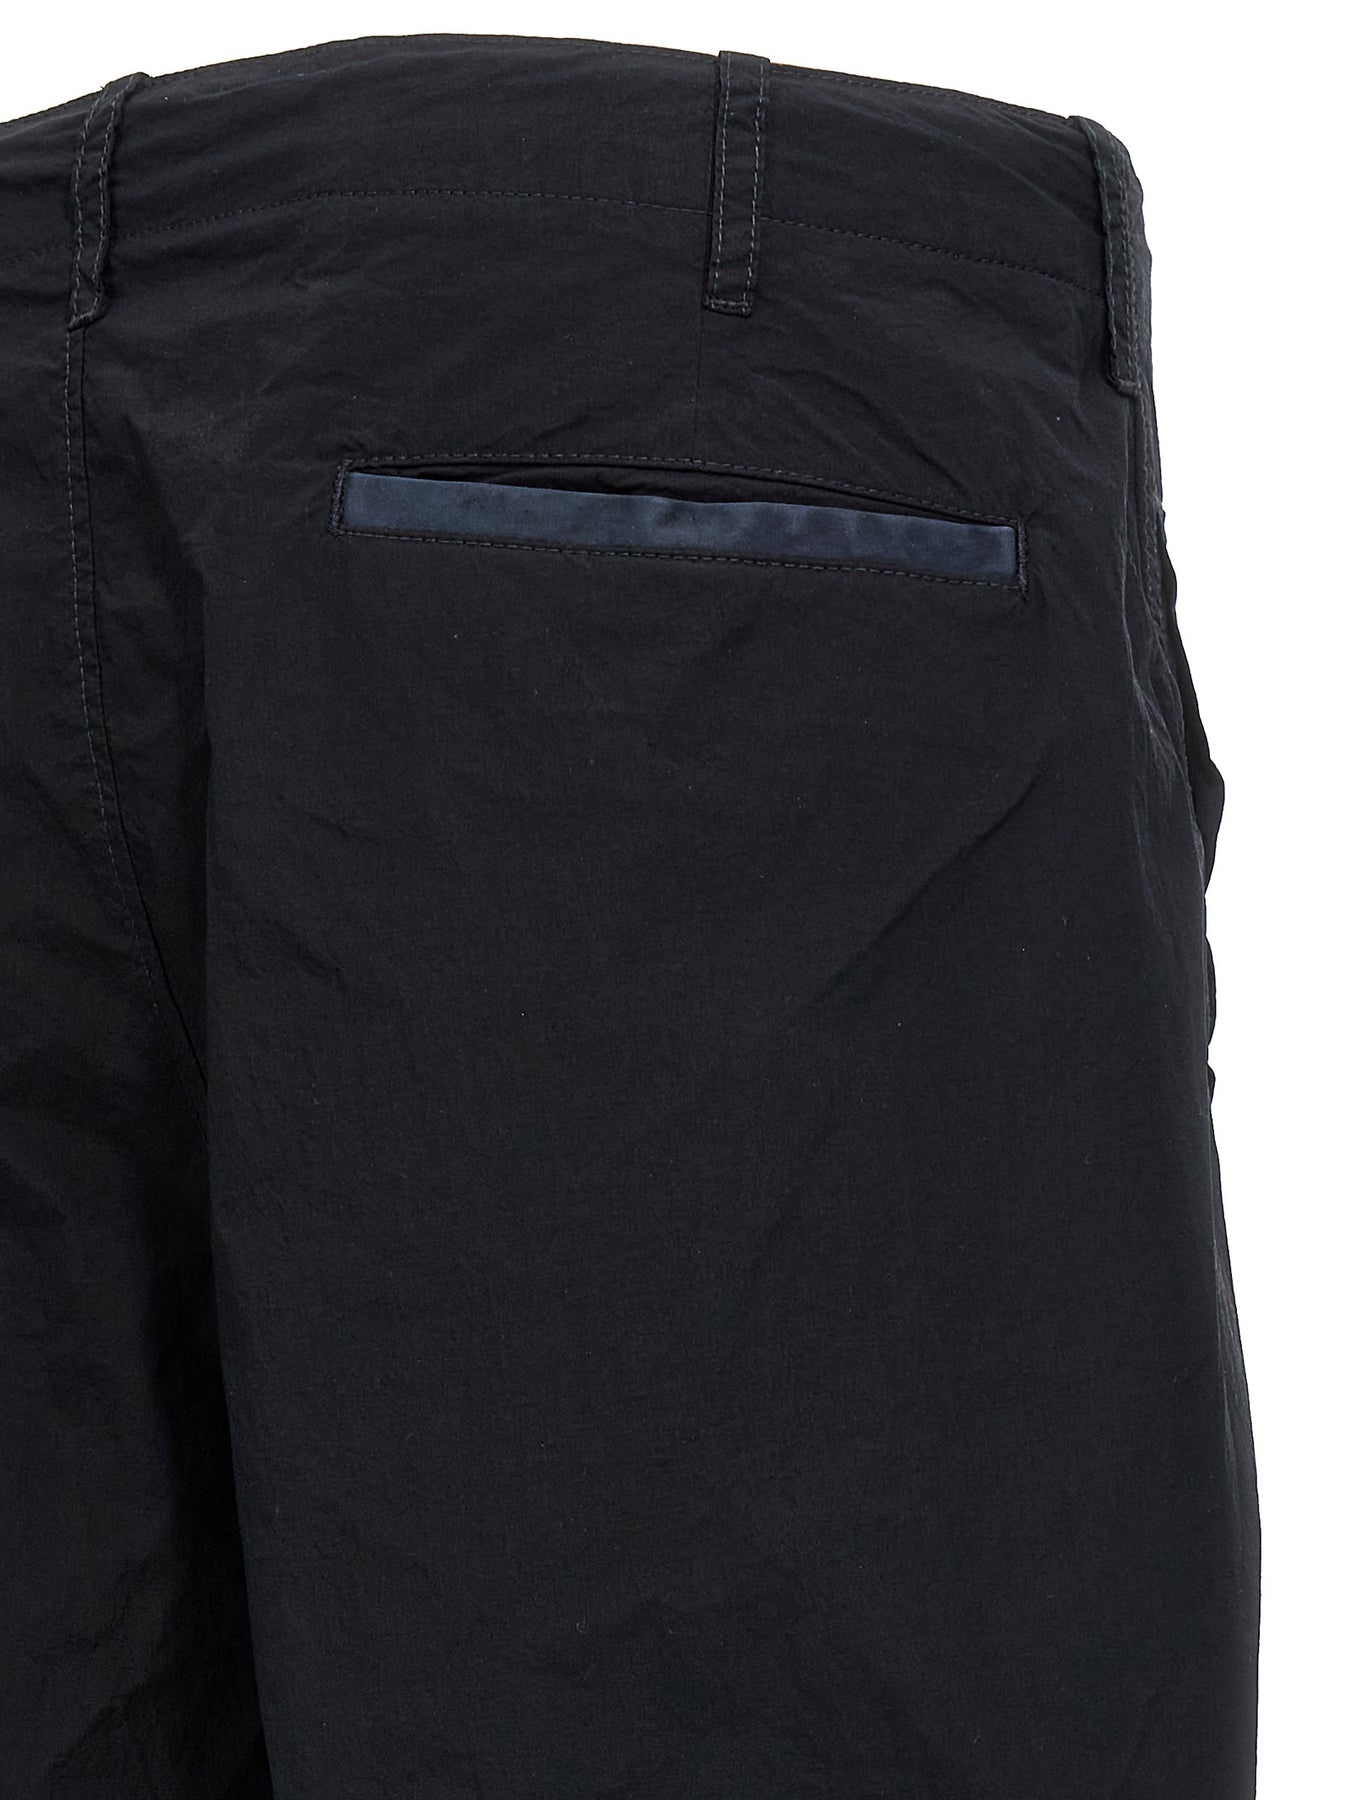 Tascona Pants Black - 4